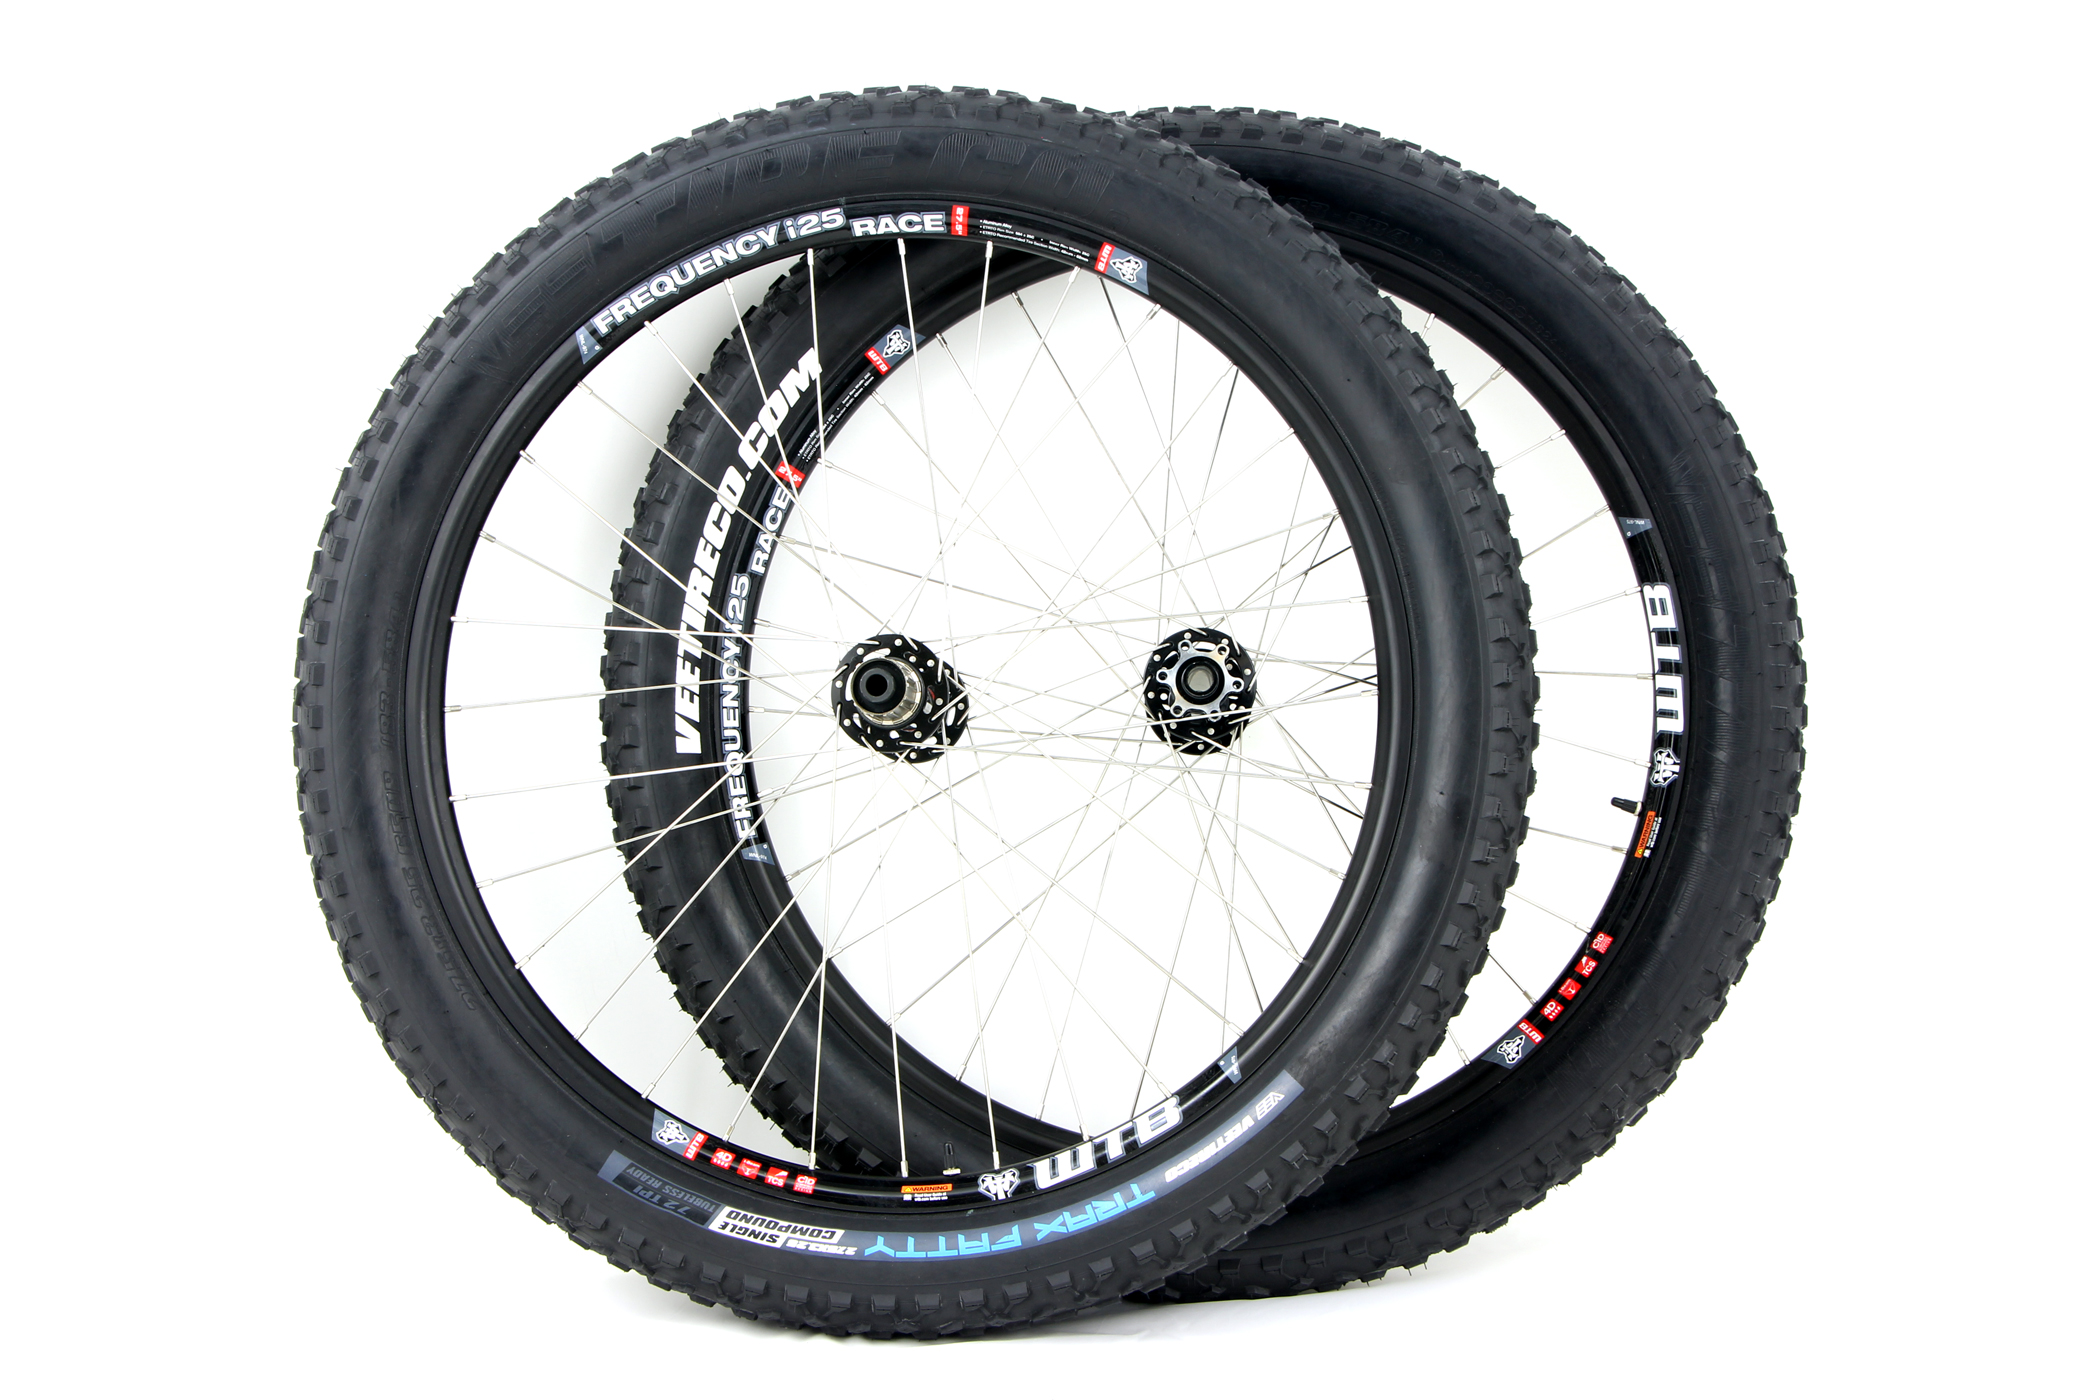 27.5 fat bike wheels